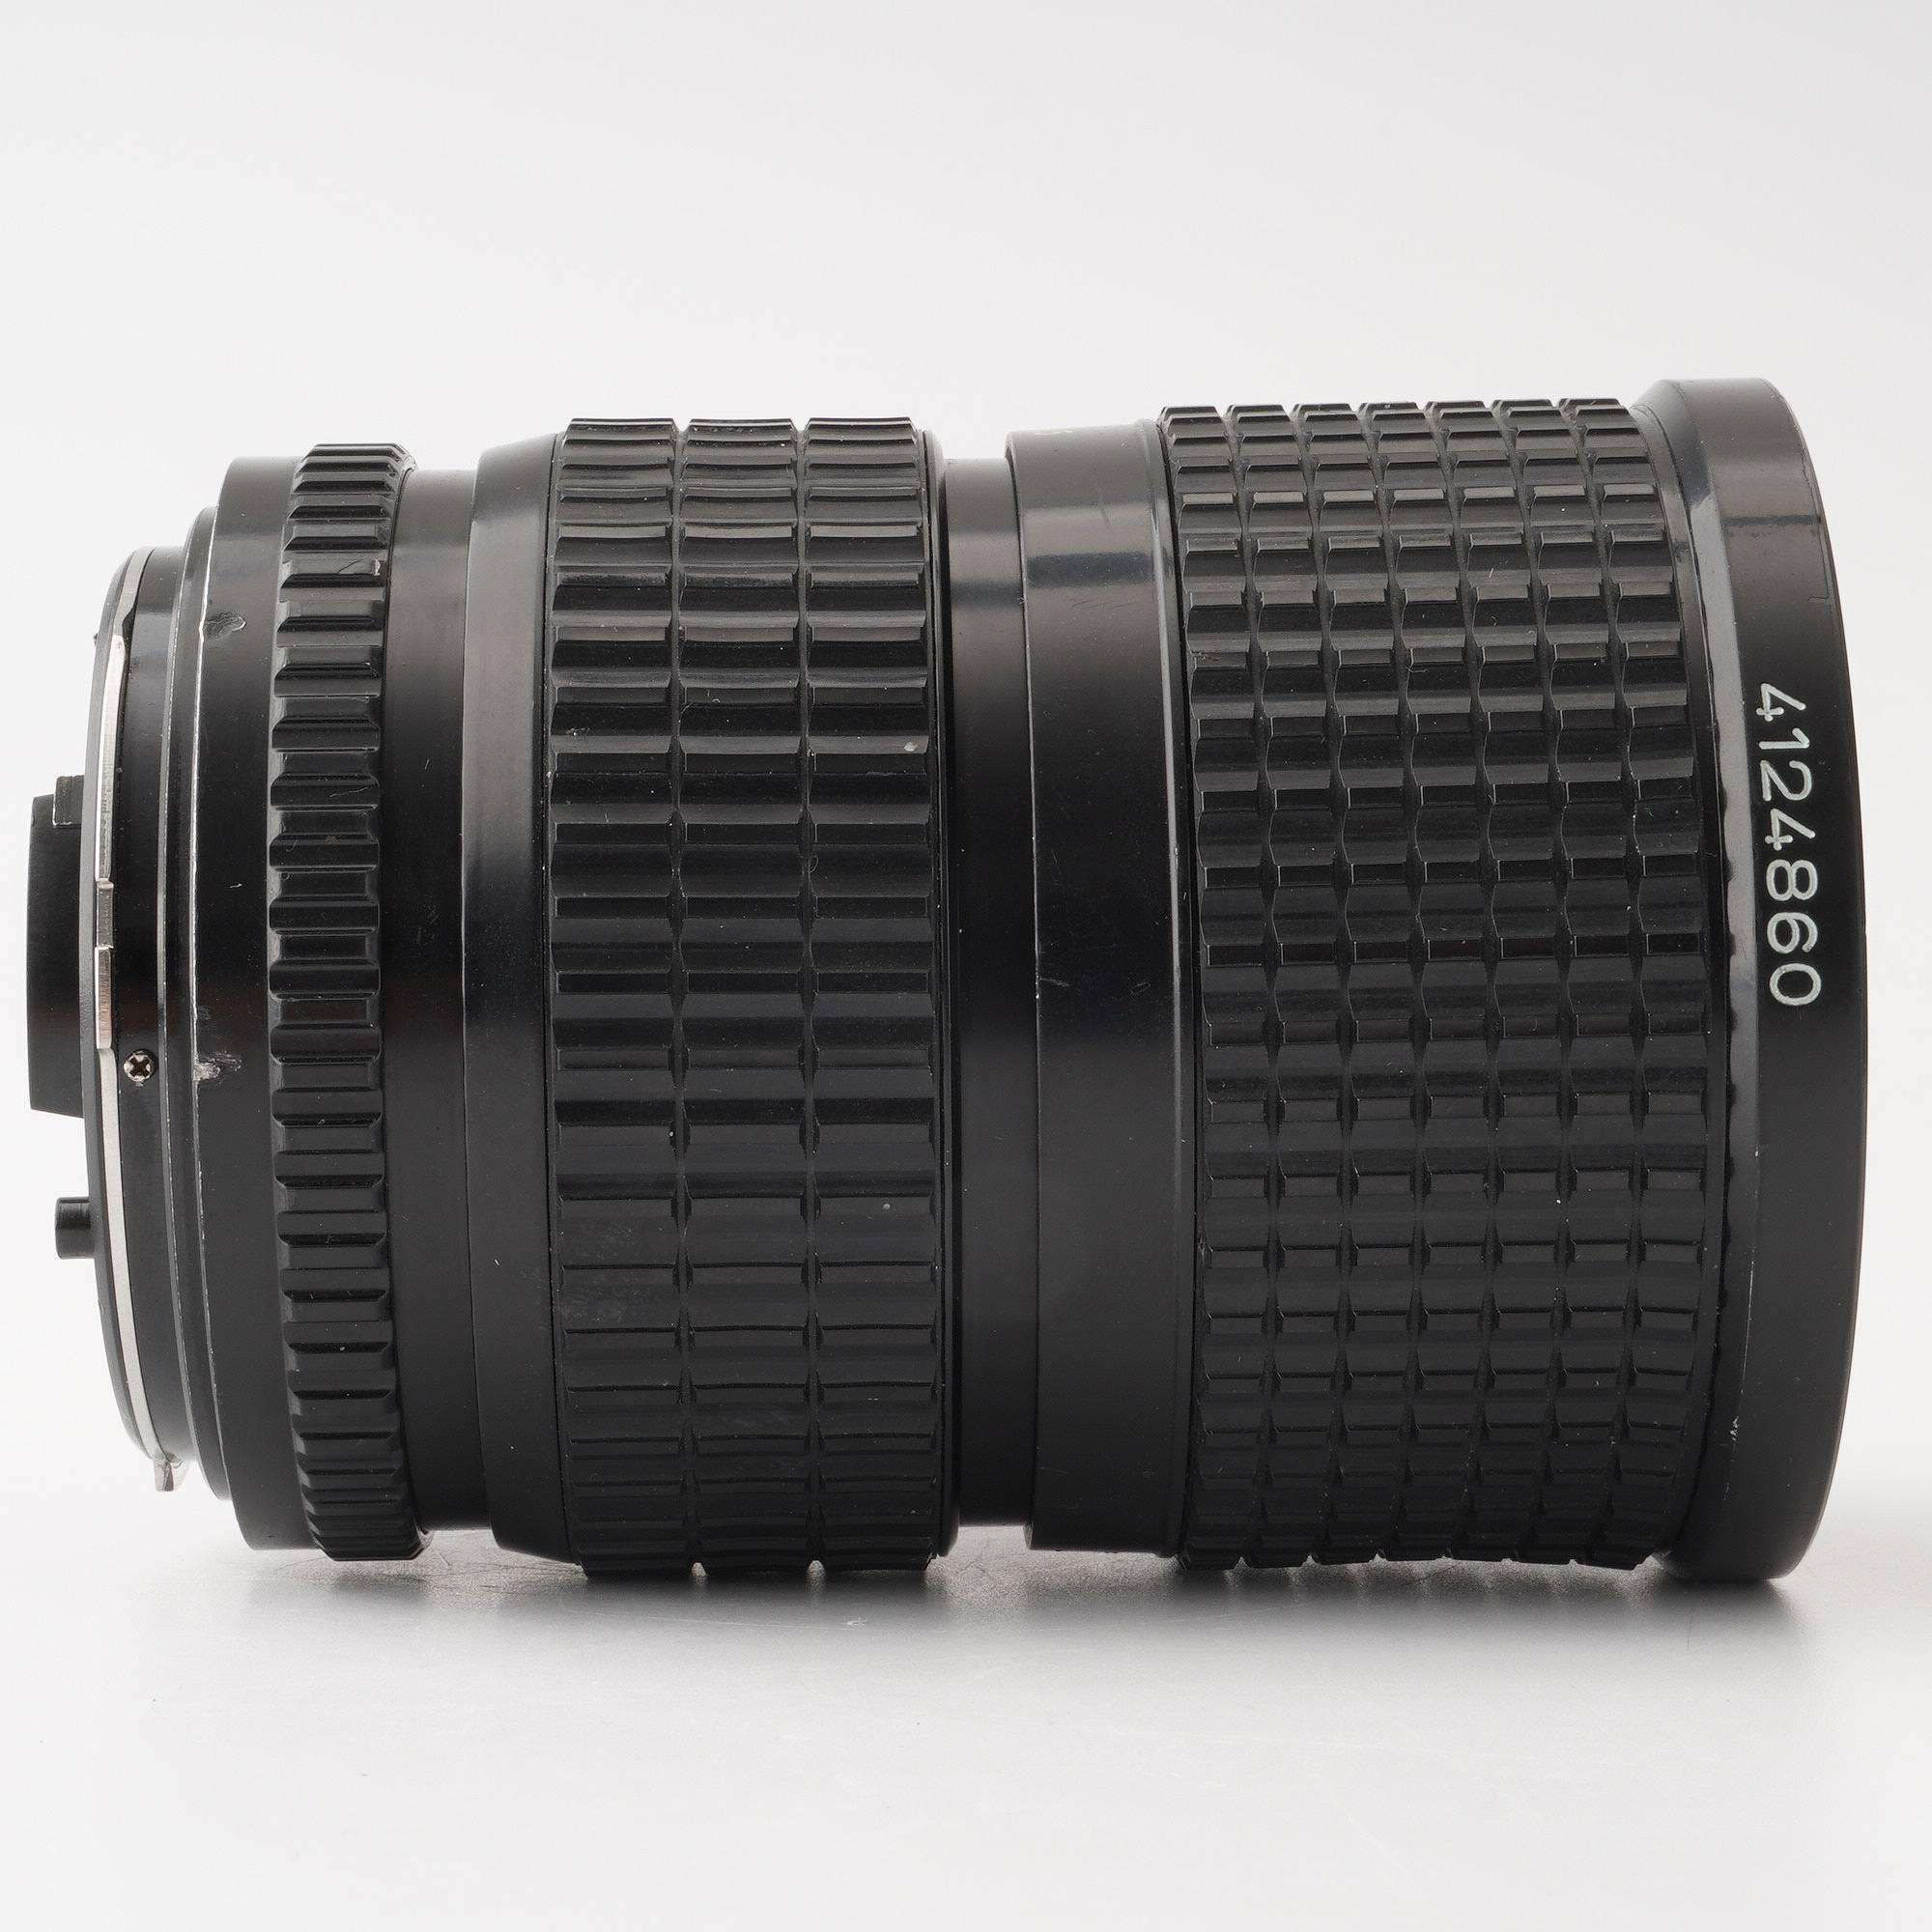 Pentax SMC PENTAX-A 645 45-85mm f/4.5 – Natural Camera